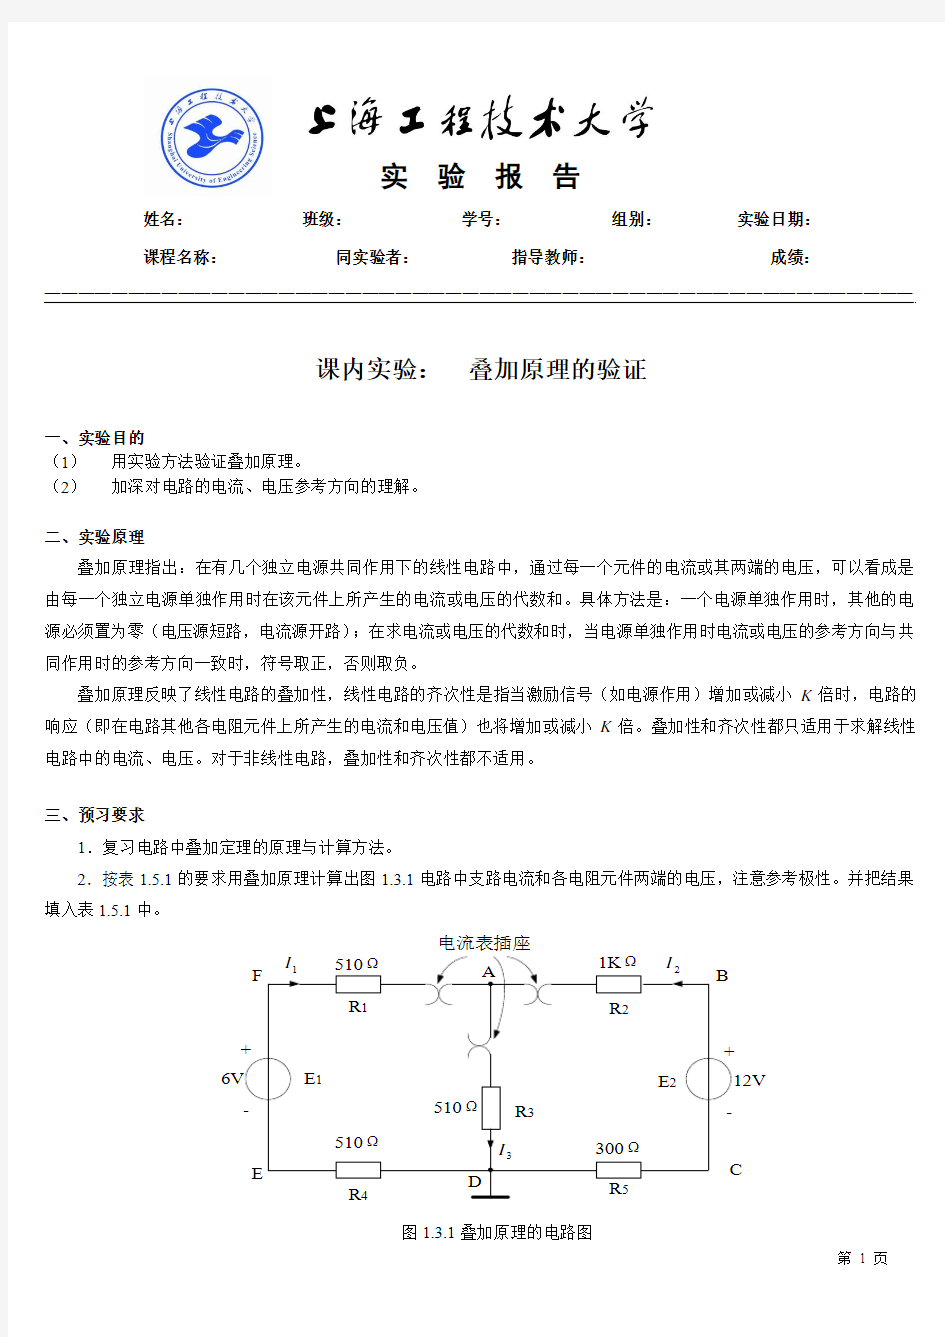 电工技术-课内实验报告模版(双面打印)-叠加原理